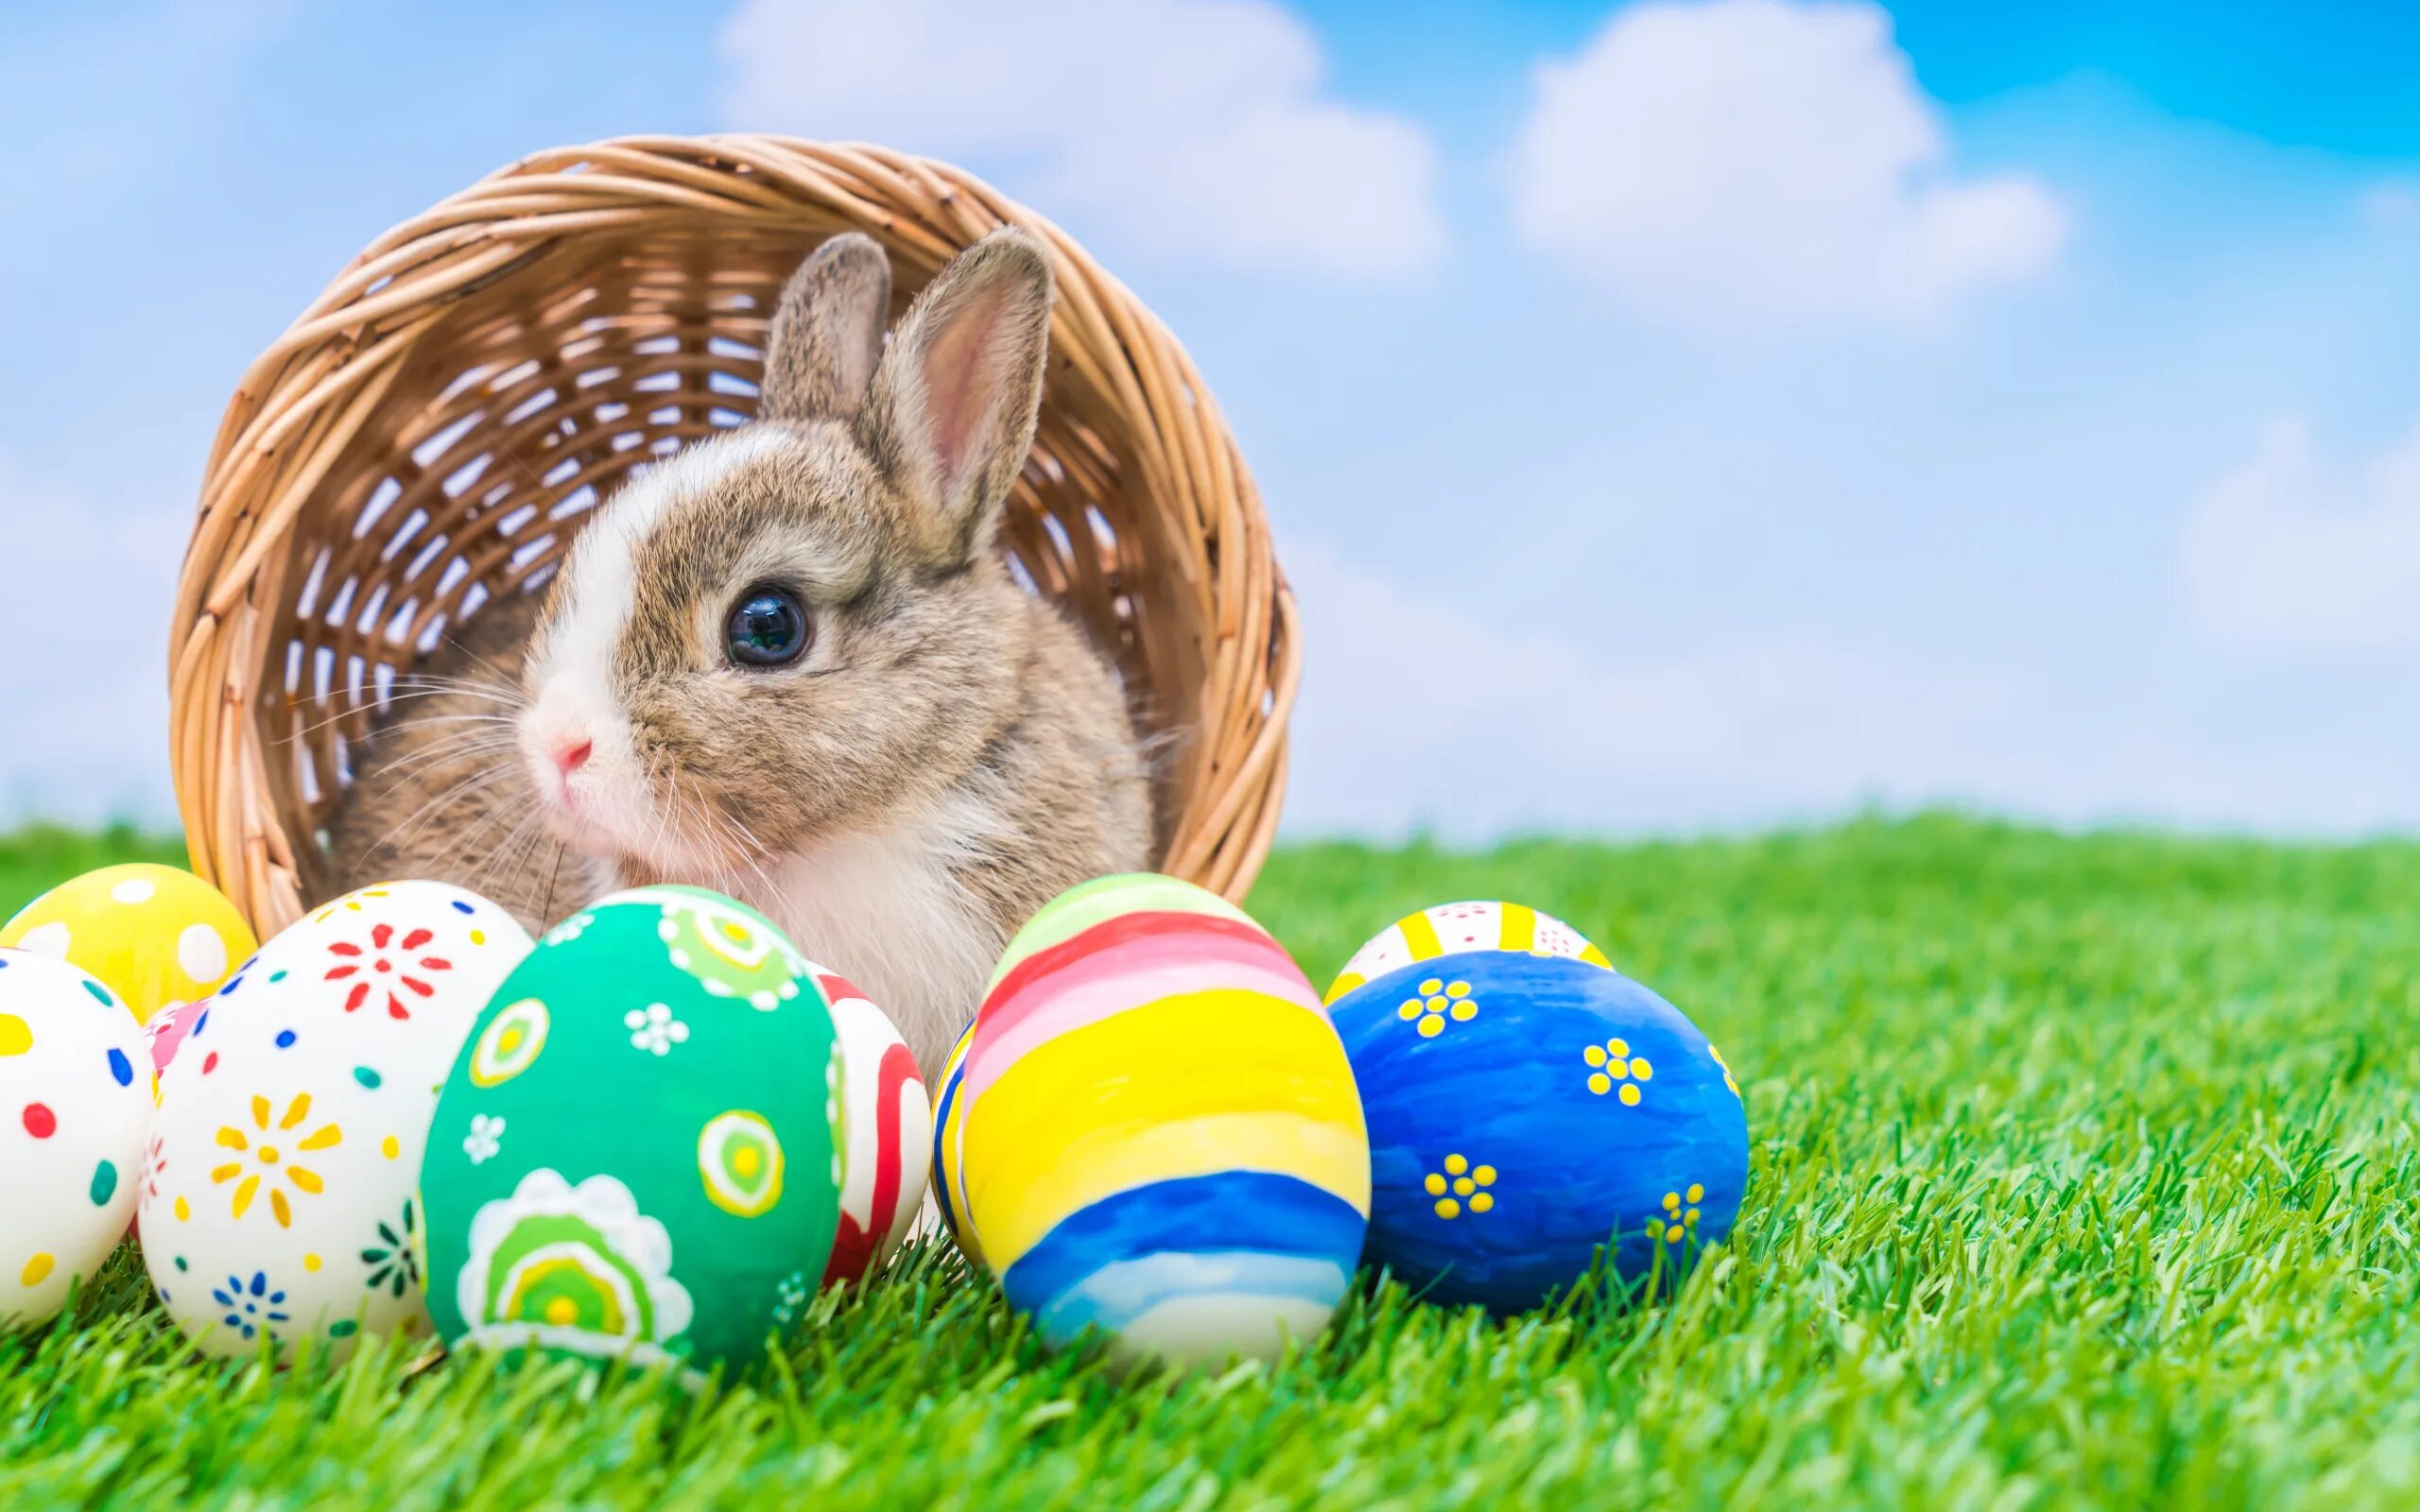 Пасхальный кролик Ostern. Easter Bunny — Пасхальный кролик. Пасхальное яйцо. Пасхальный заяц с яйцом. Пасха в 1974 году